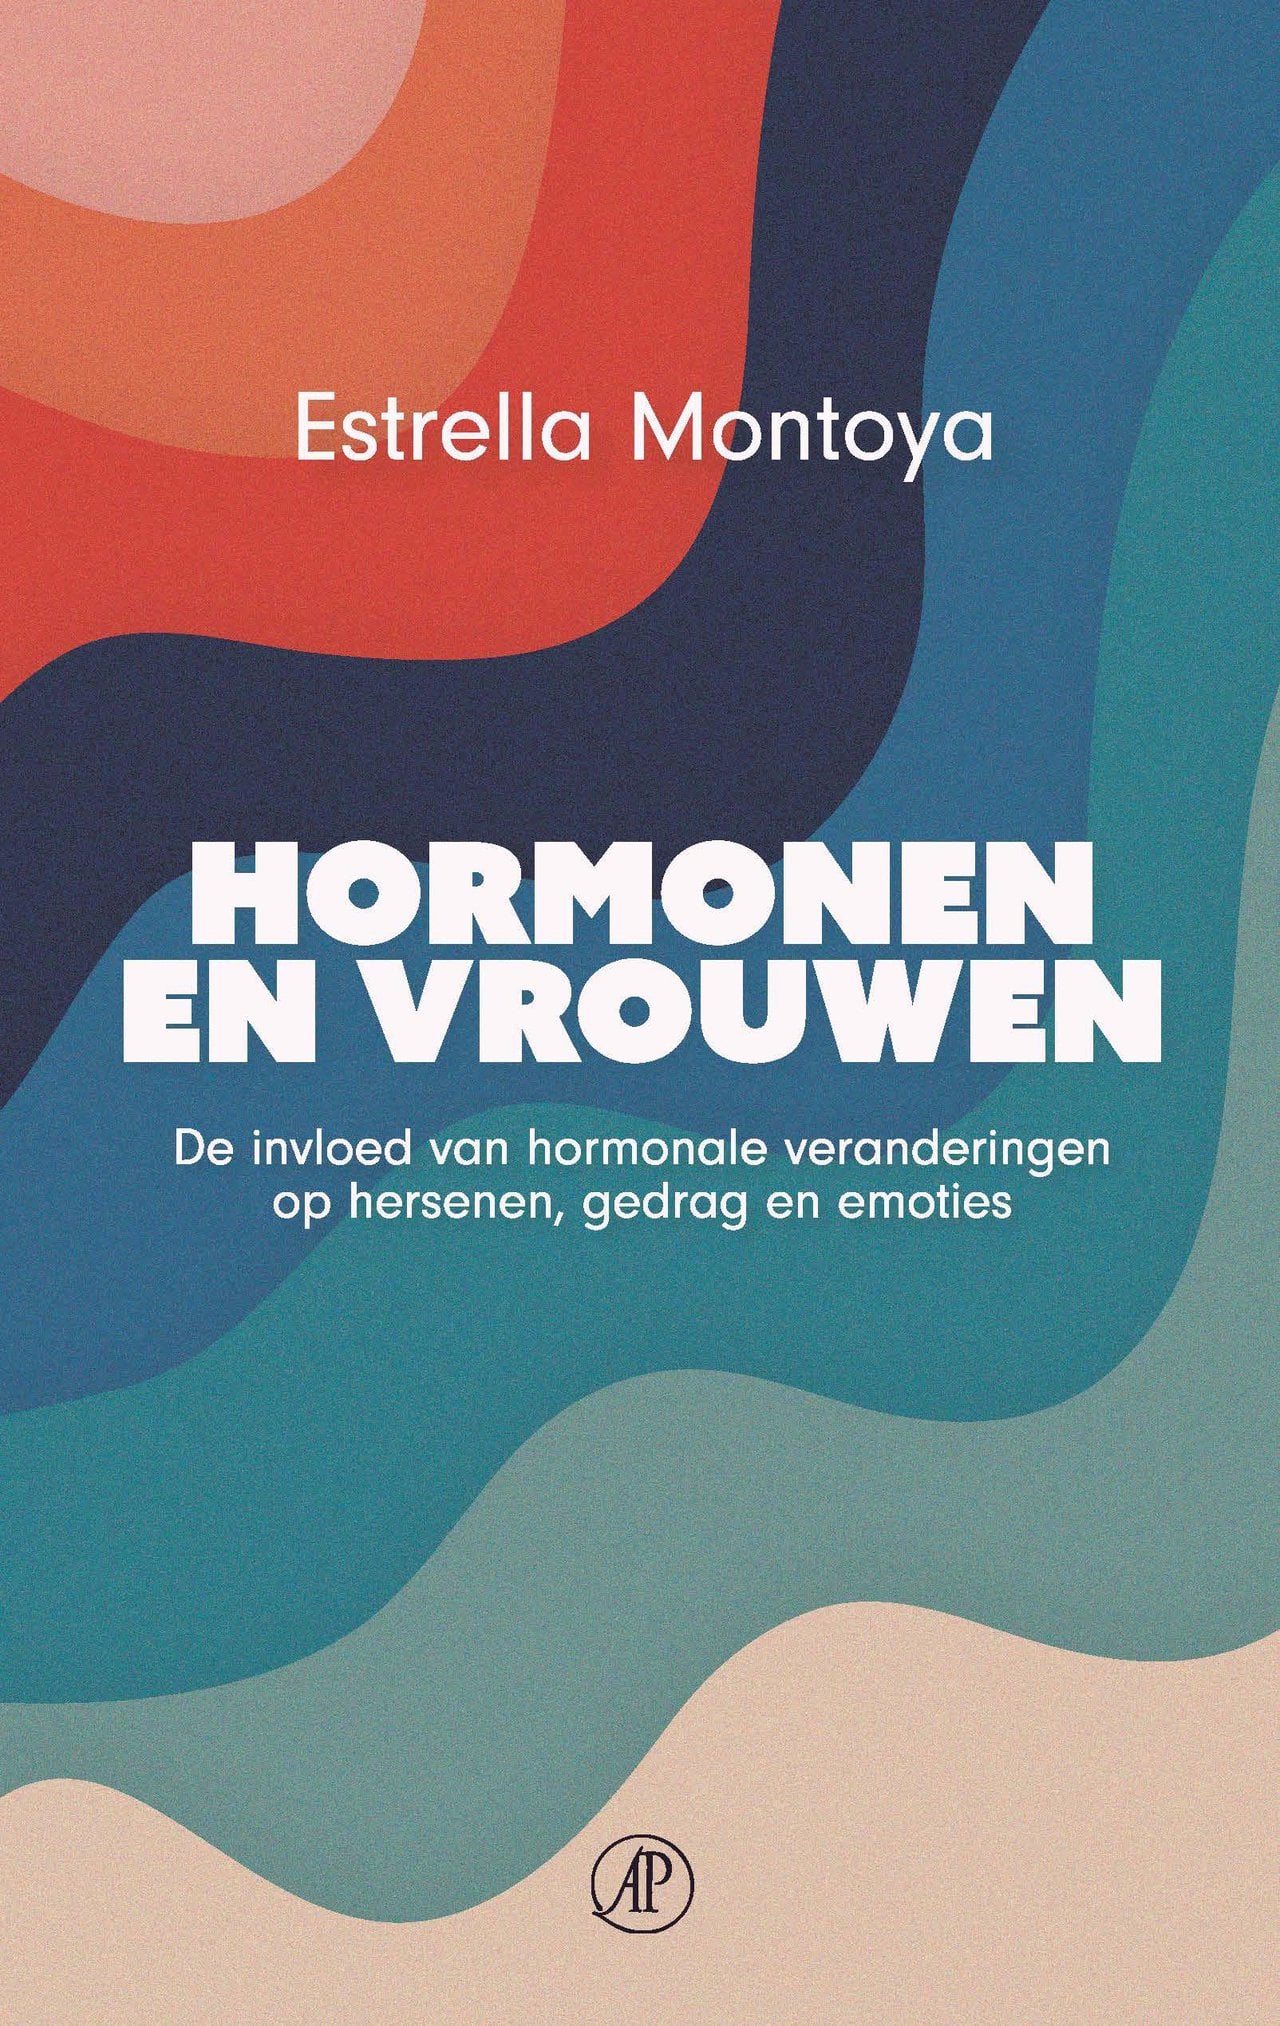 Afbeelding Hormonen en vrouwen